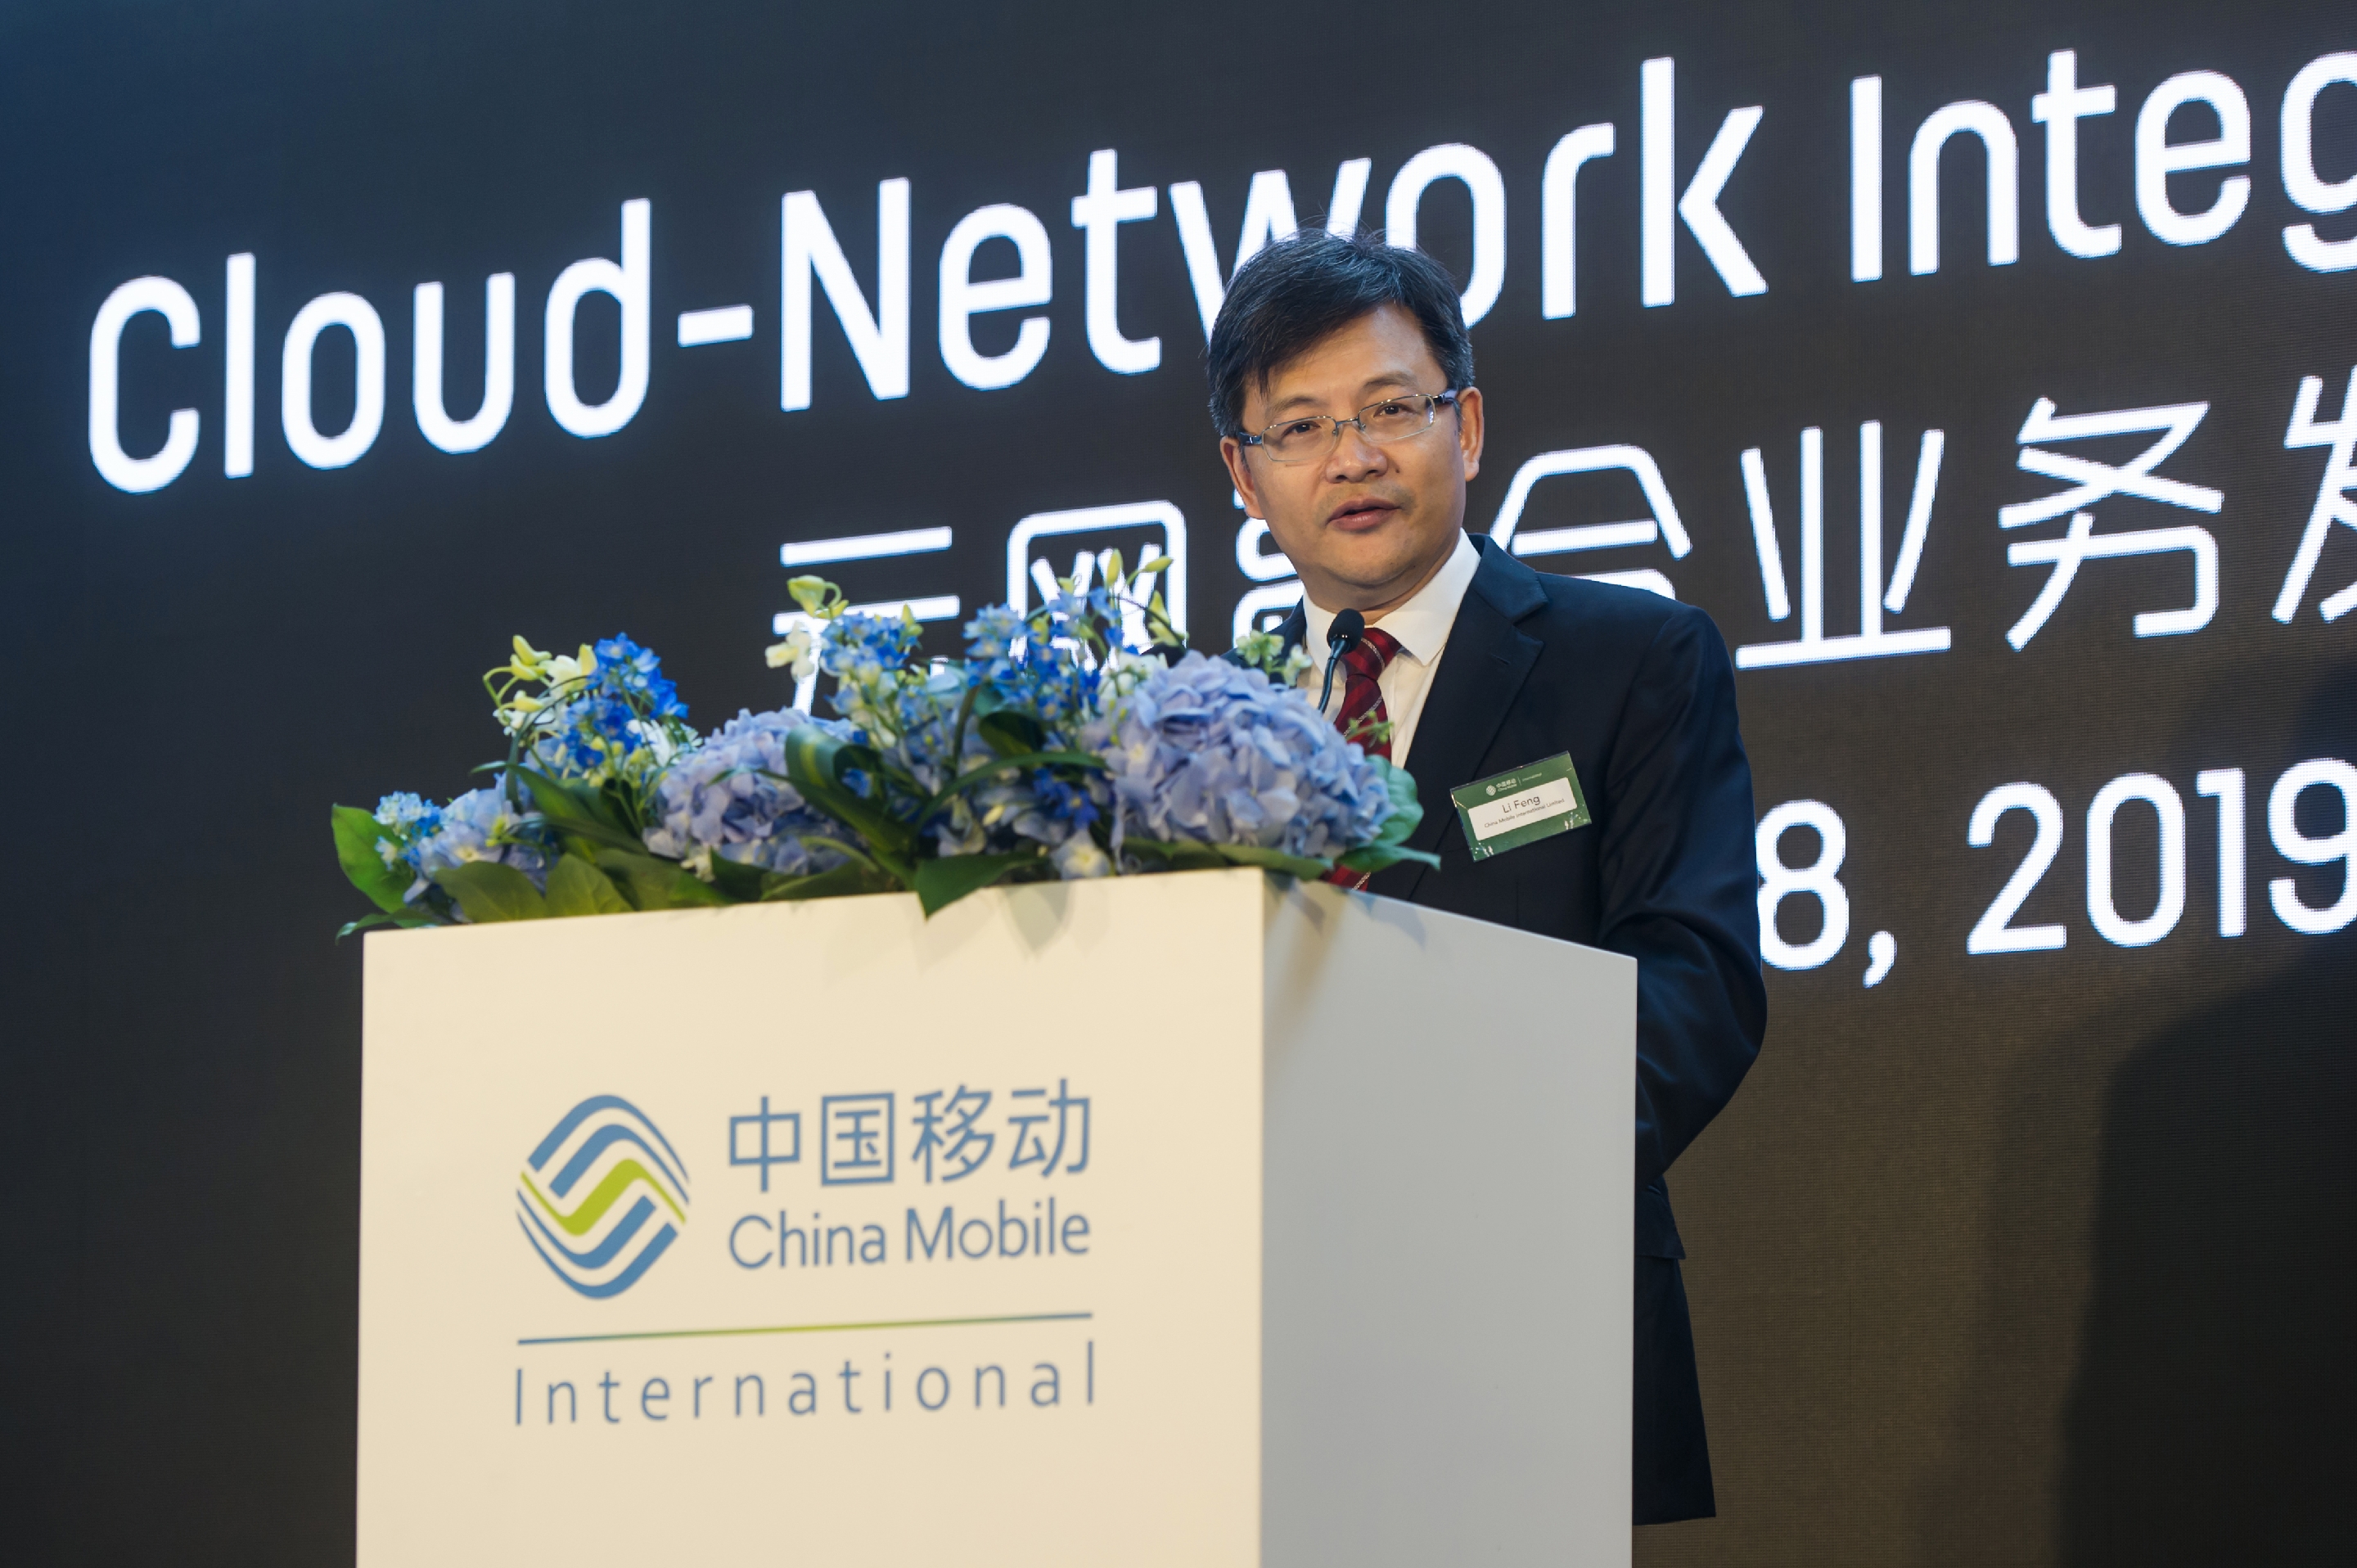 移动国际在香港发布中国首张覆盖全球的云网络